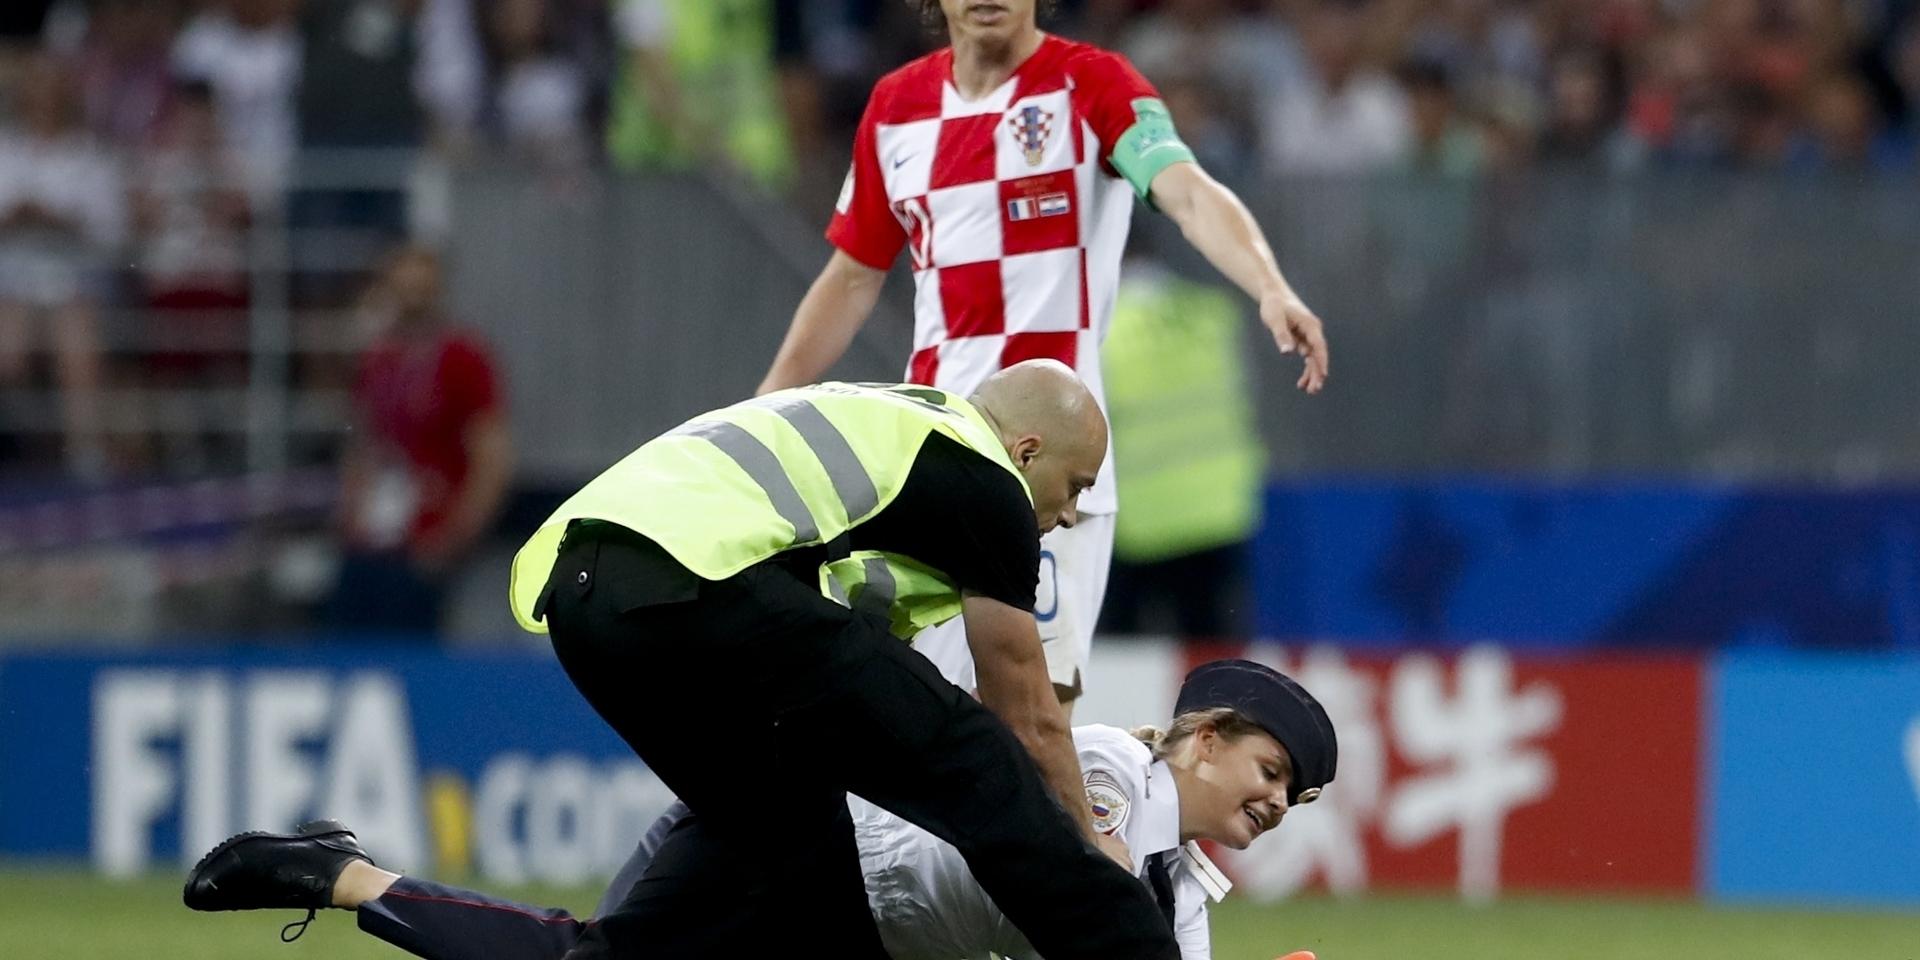 Sprang in på plan. En kvinna från konstnärskollektivet Pussy Riot brottas ned av vakter när hon sprang in på fotbollsplanen under finalen mellan Frankrike och Kroatien i söndags. 